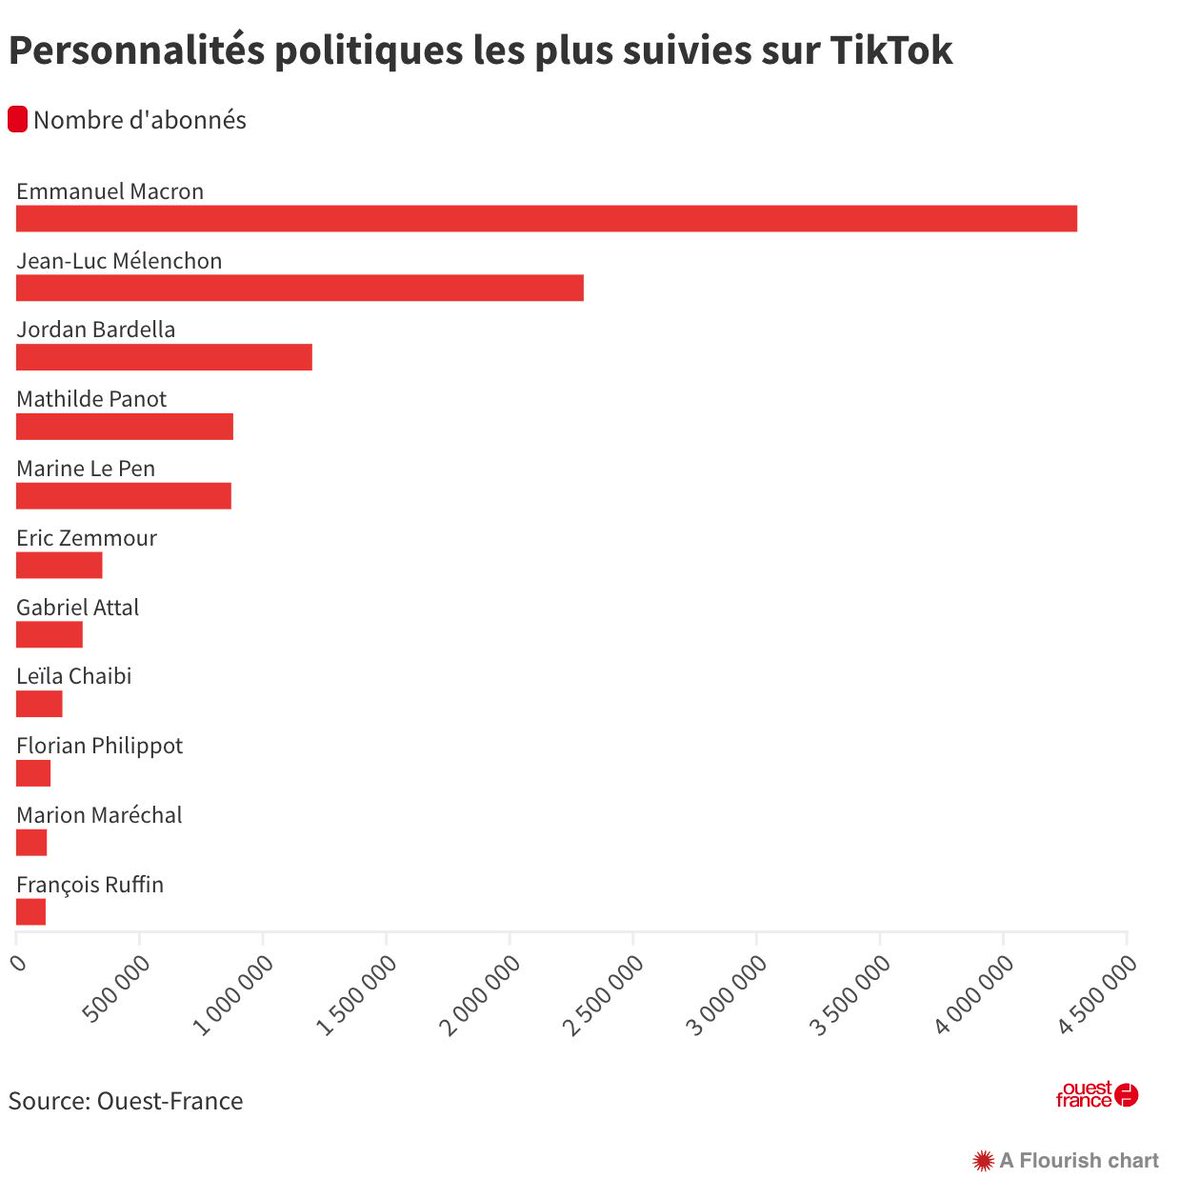 🥳Je suis dans le top 10 des personnalités politiques les plus suivies sur TikTok ! Merci à celles et ceux qui me suivent. Les autres, c'est par ici👉tiktok.com/@leila.chaibi 🚀Prochaine cible à dépasser : Gabriel Attal